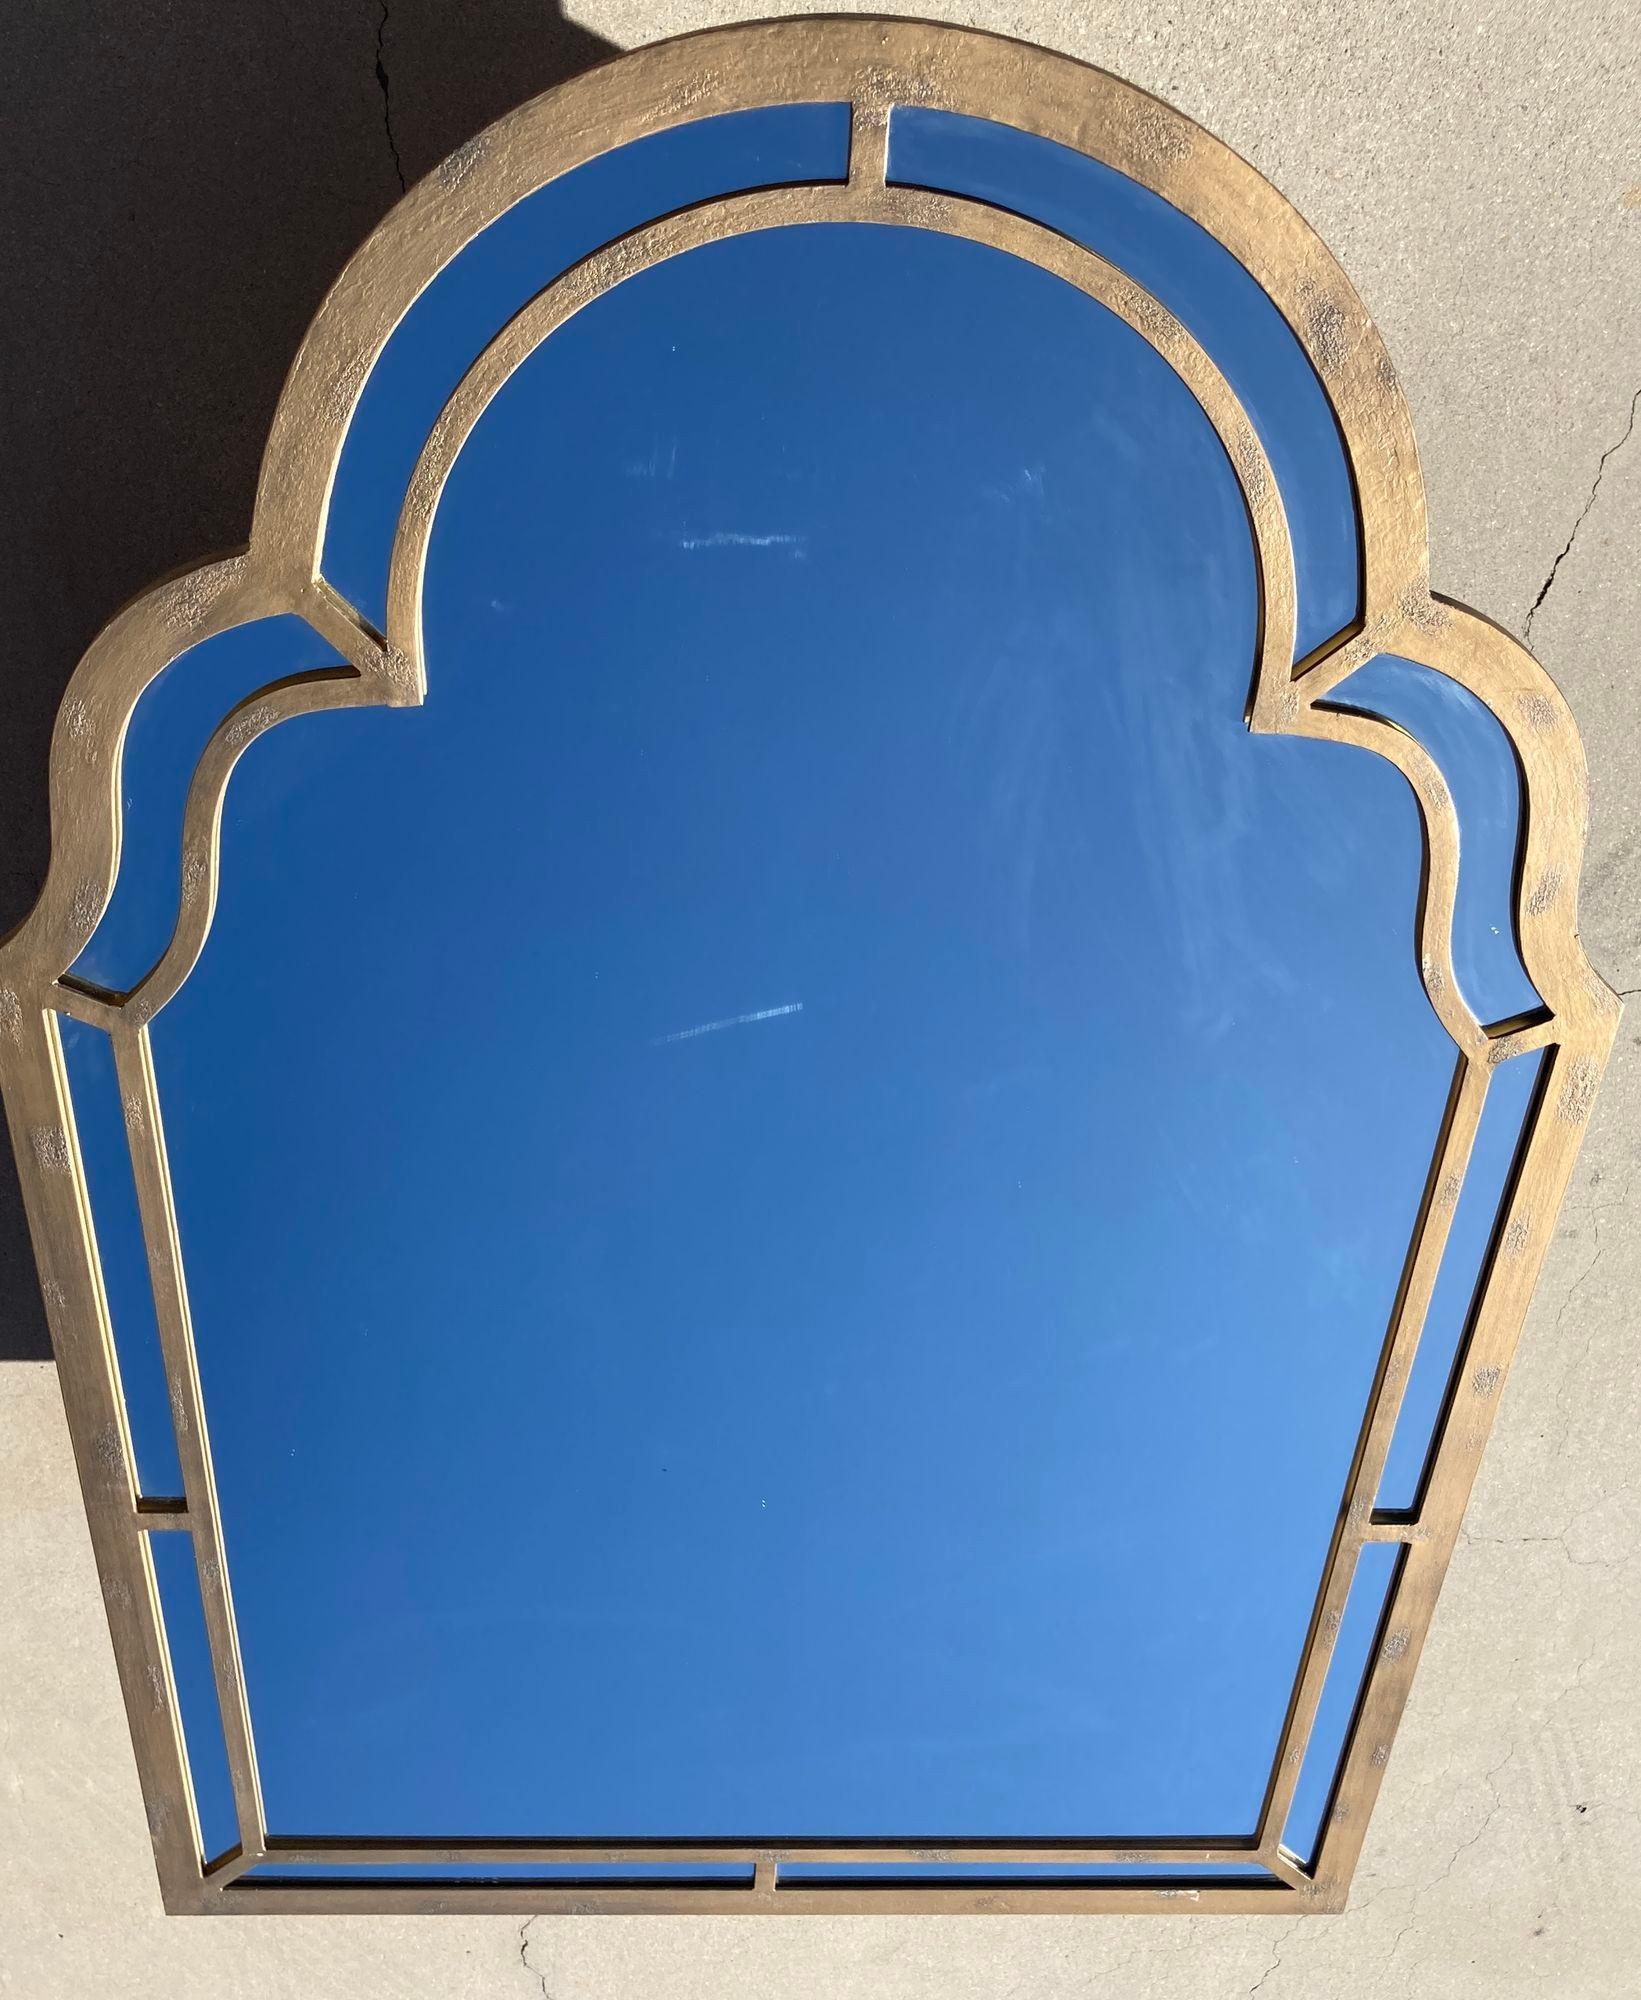 Sehr großer, handgefertigter, massiver Spiegel aus Schmiedeeisen.
Maurischer Gewölbespiegel, der zu jedem orientalischen Dekor oder zu traditionellem mediterranem oder spanischem Kolonialdekor in Santa Barbara, Kalifornien, passen wird.
Großer und